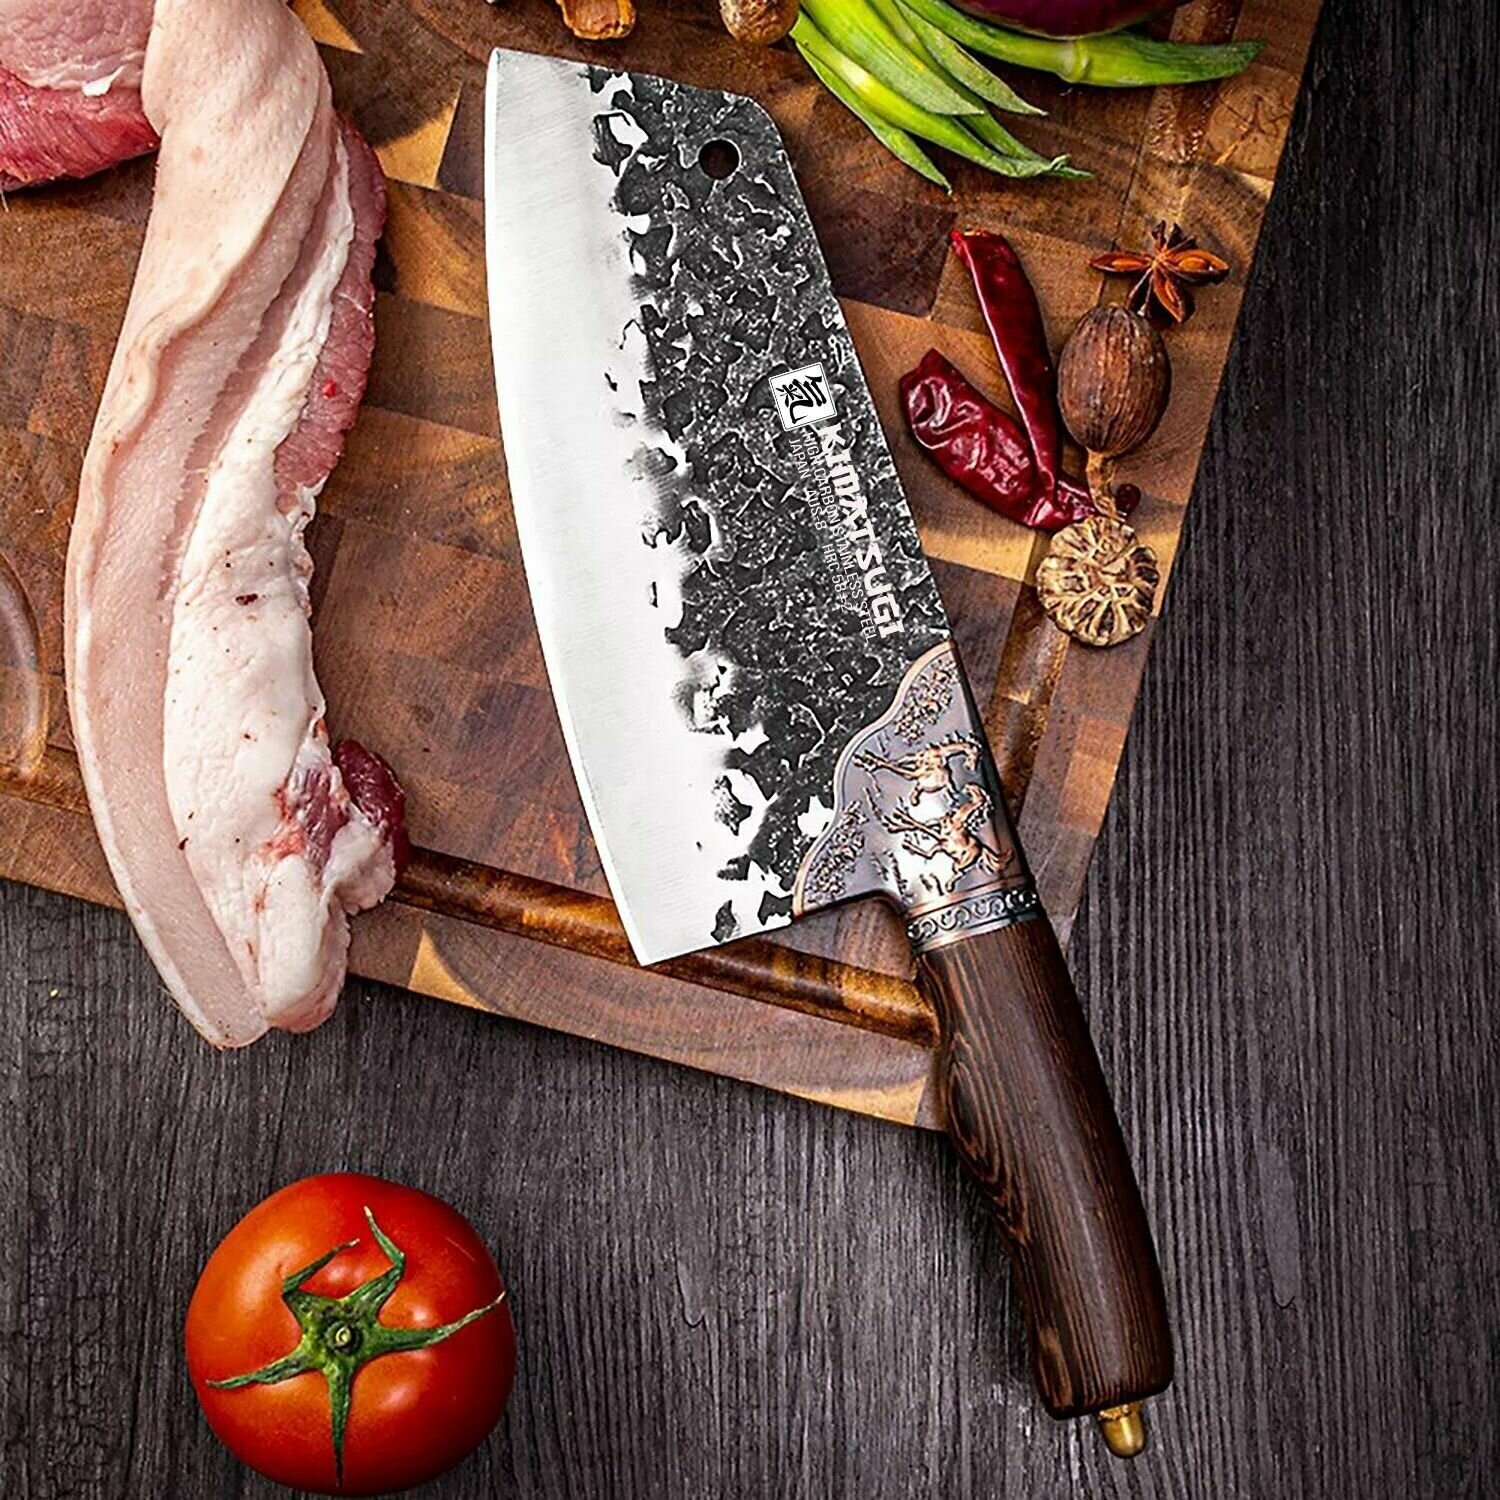 KIMATSUGI / Кованый кухонный нож - топорик "Kaiju" / Нож для разделки мяса / Японская сталь AUS-8 / Длина лезвия 20 см